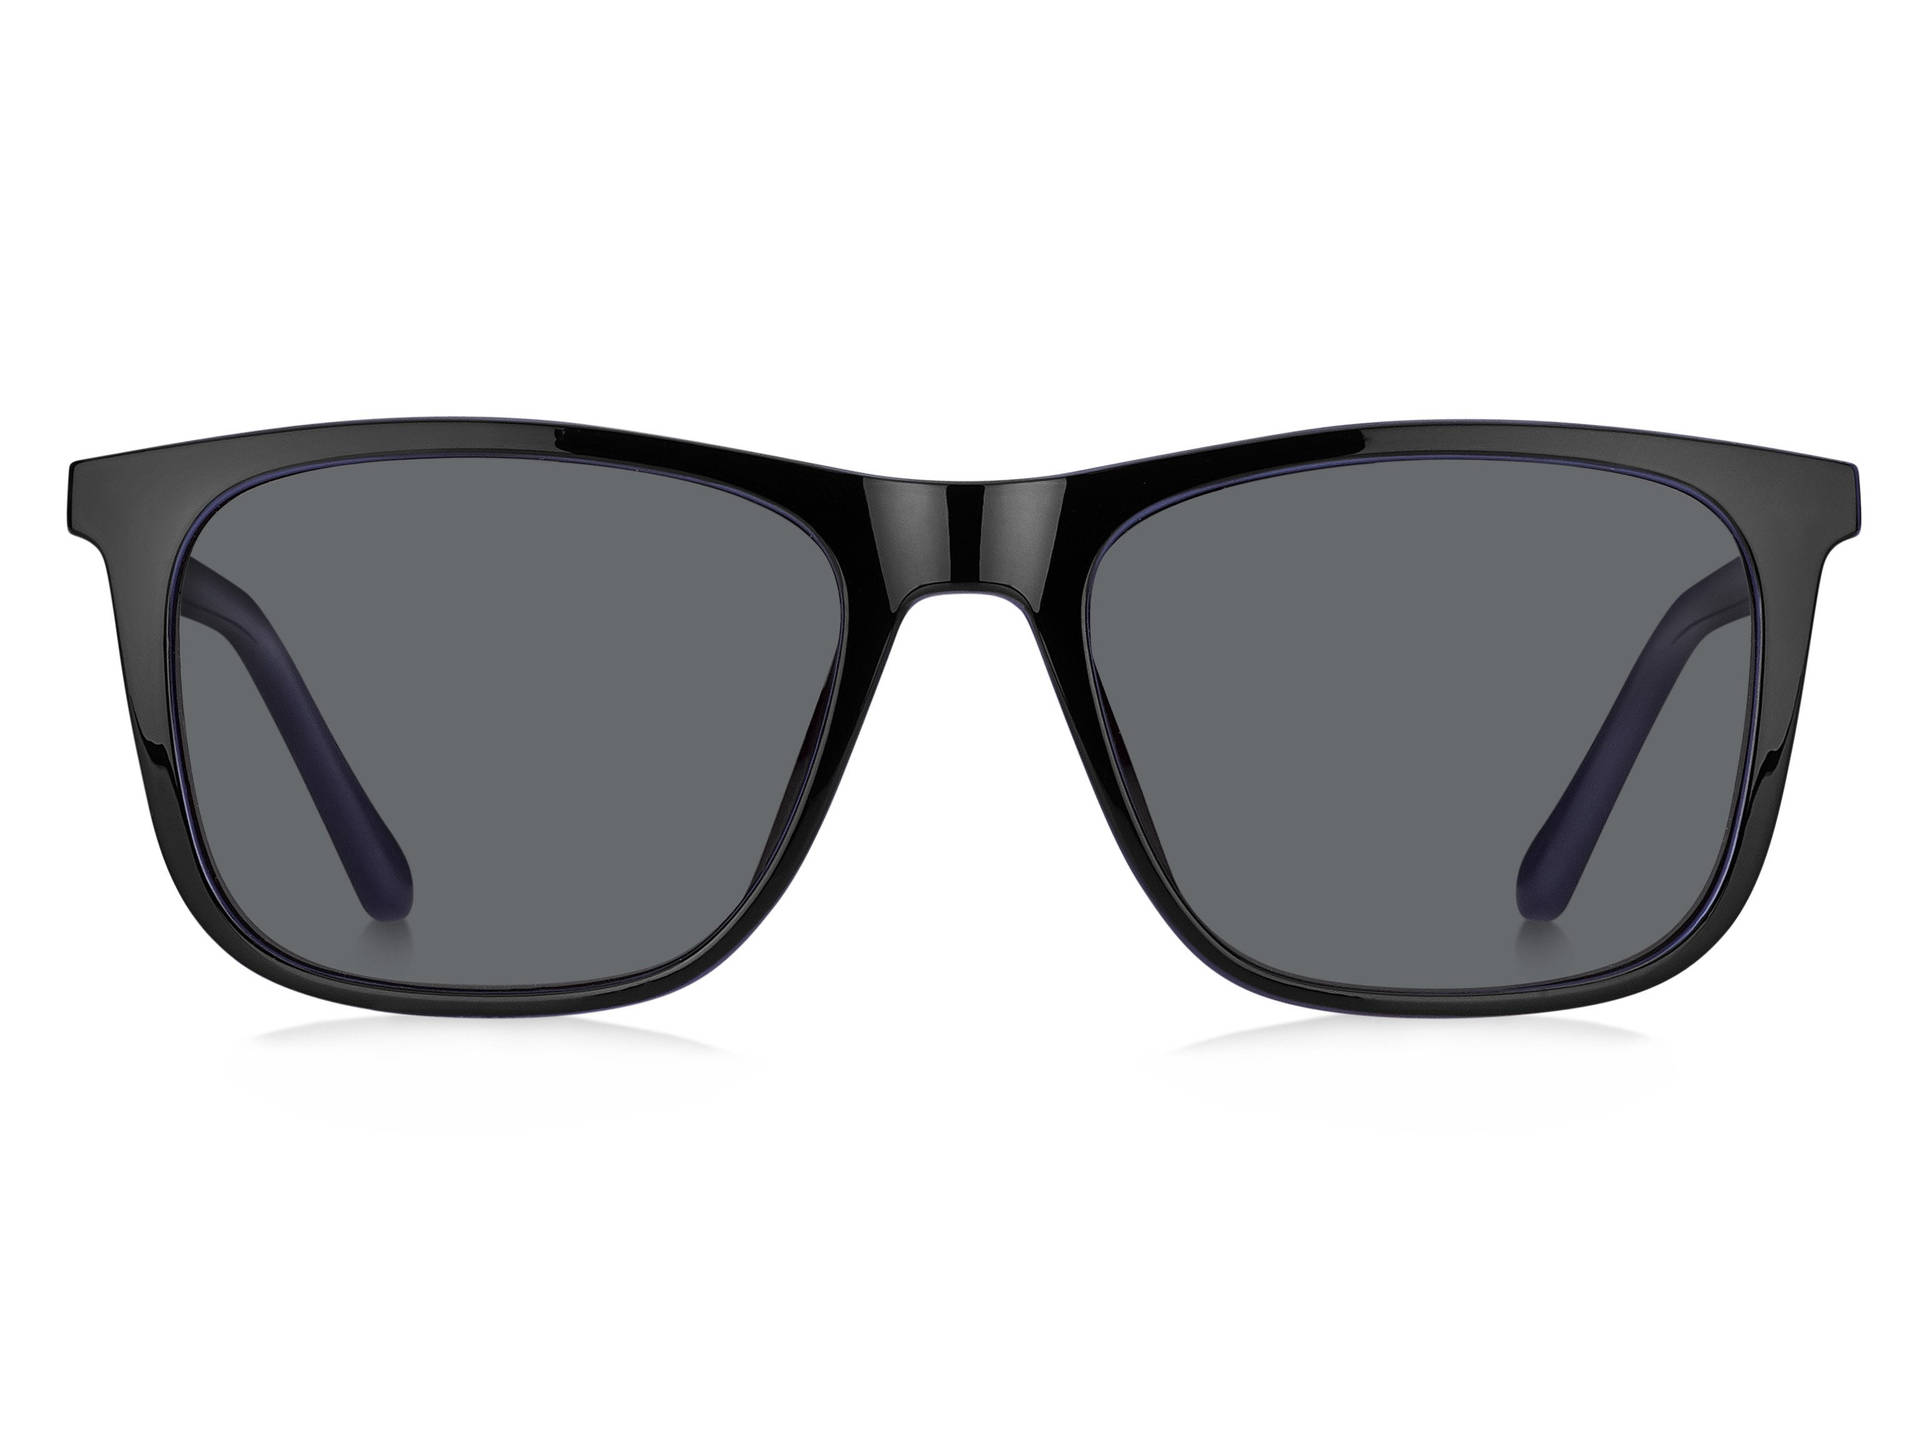 Luxurious Matte Black Fossil Sunglasses Wallpaper